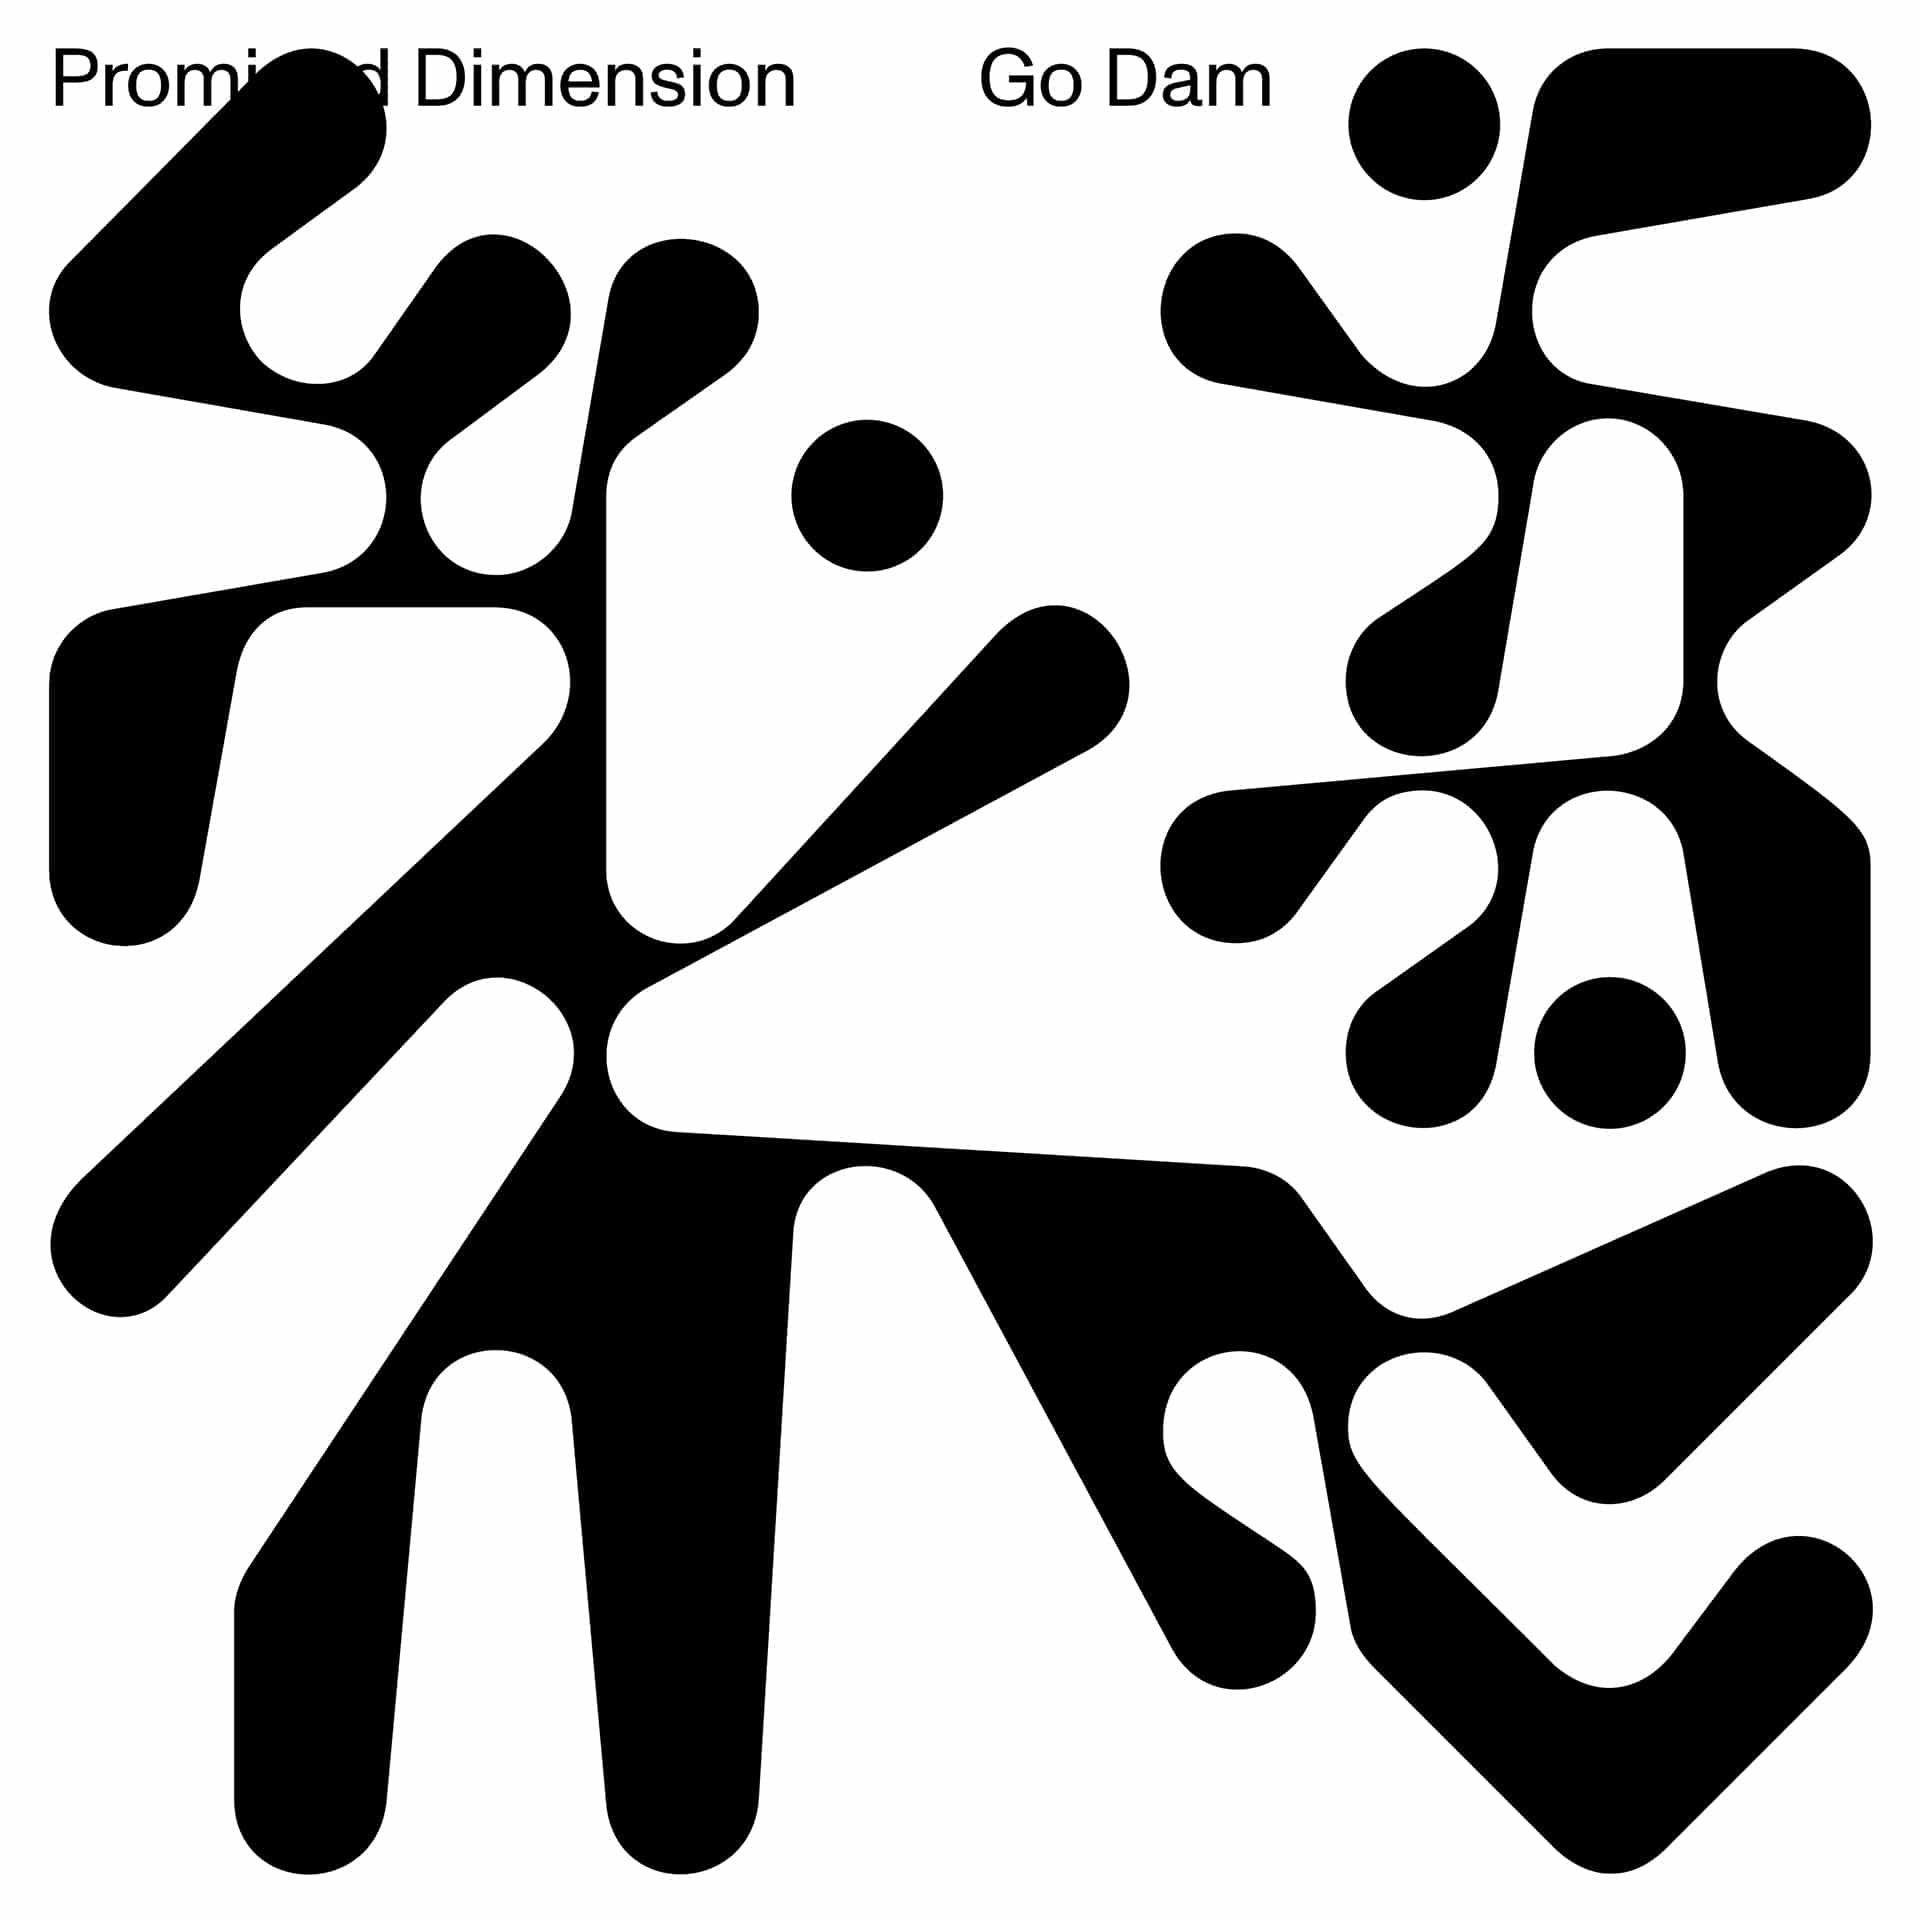 Go Dam - Promised Dimension - BD04 - BRAINDANCE RECORDS